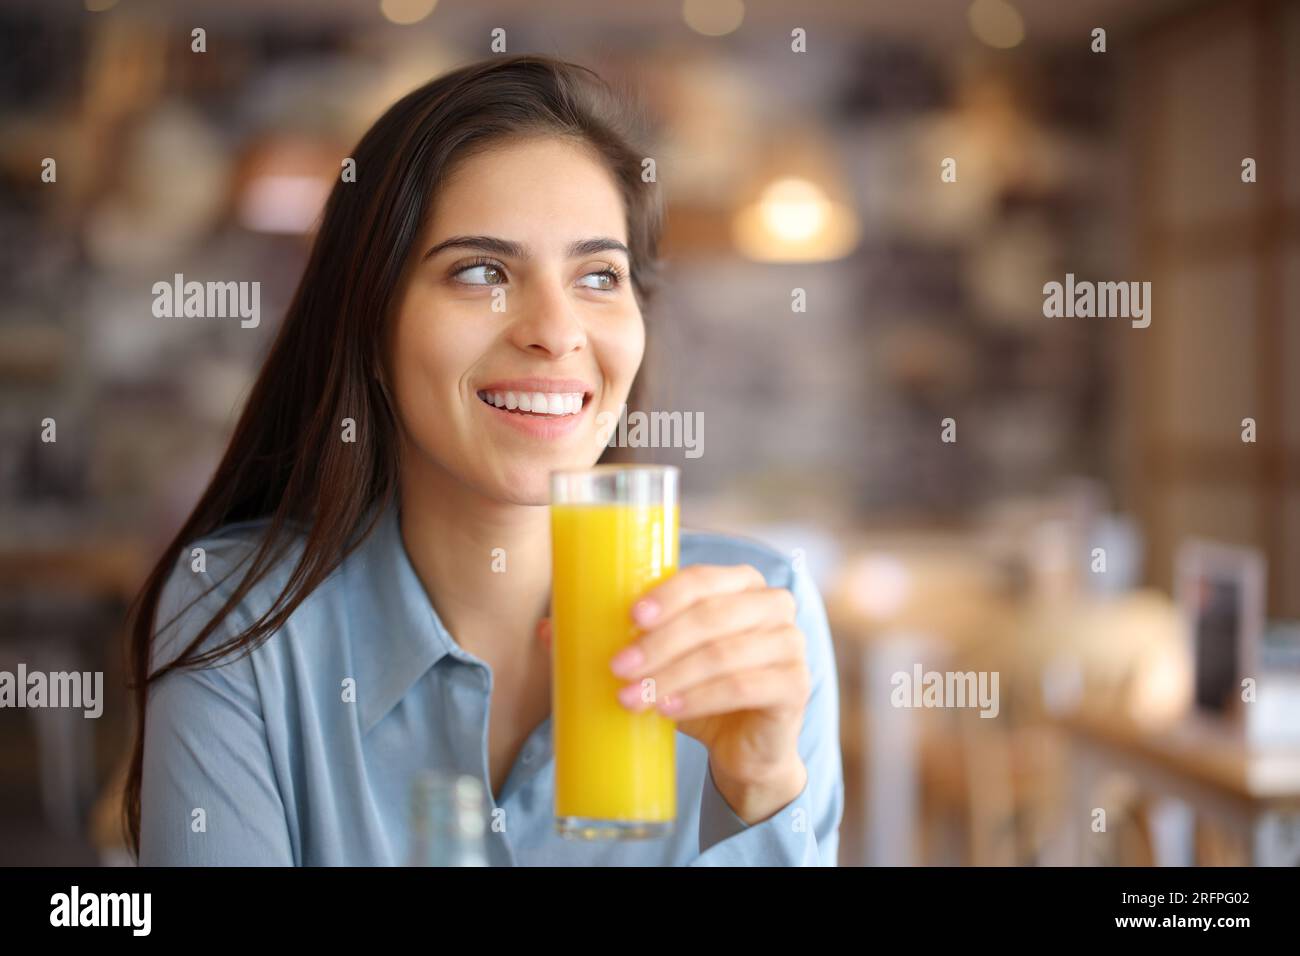 Eine glückliche Frau, die Orangensaft trinkt, sieht in einer Bar im Inneren weg Stockfoto